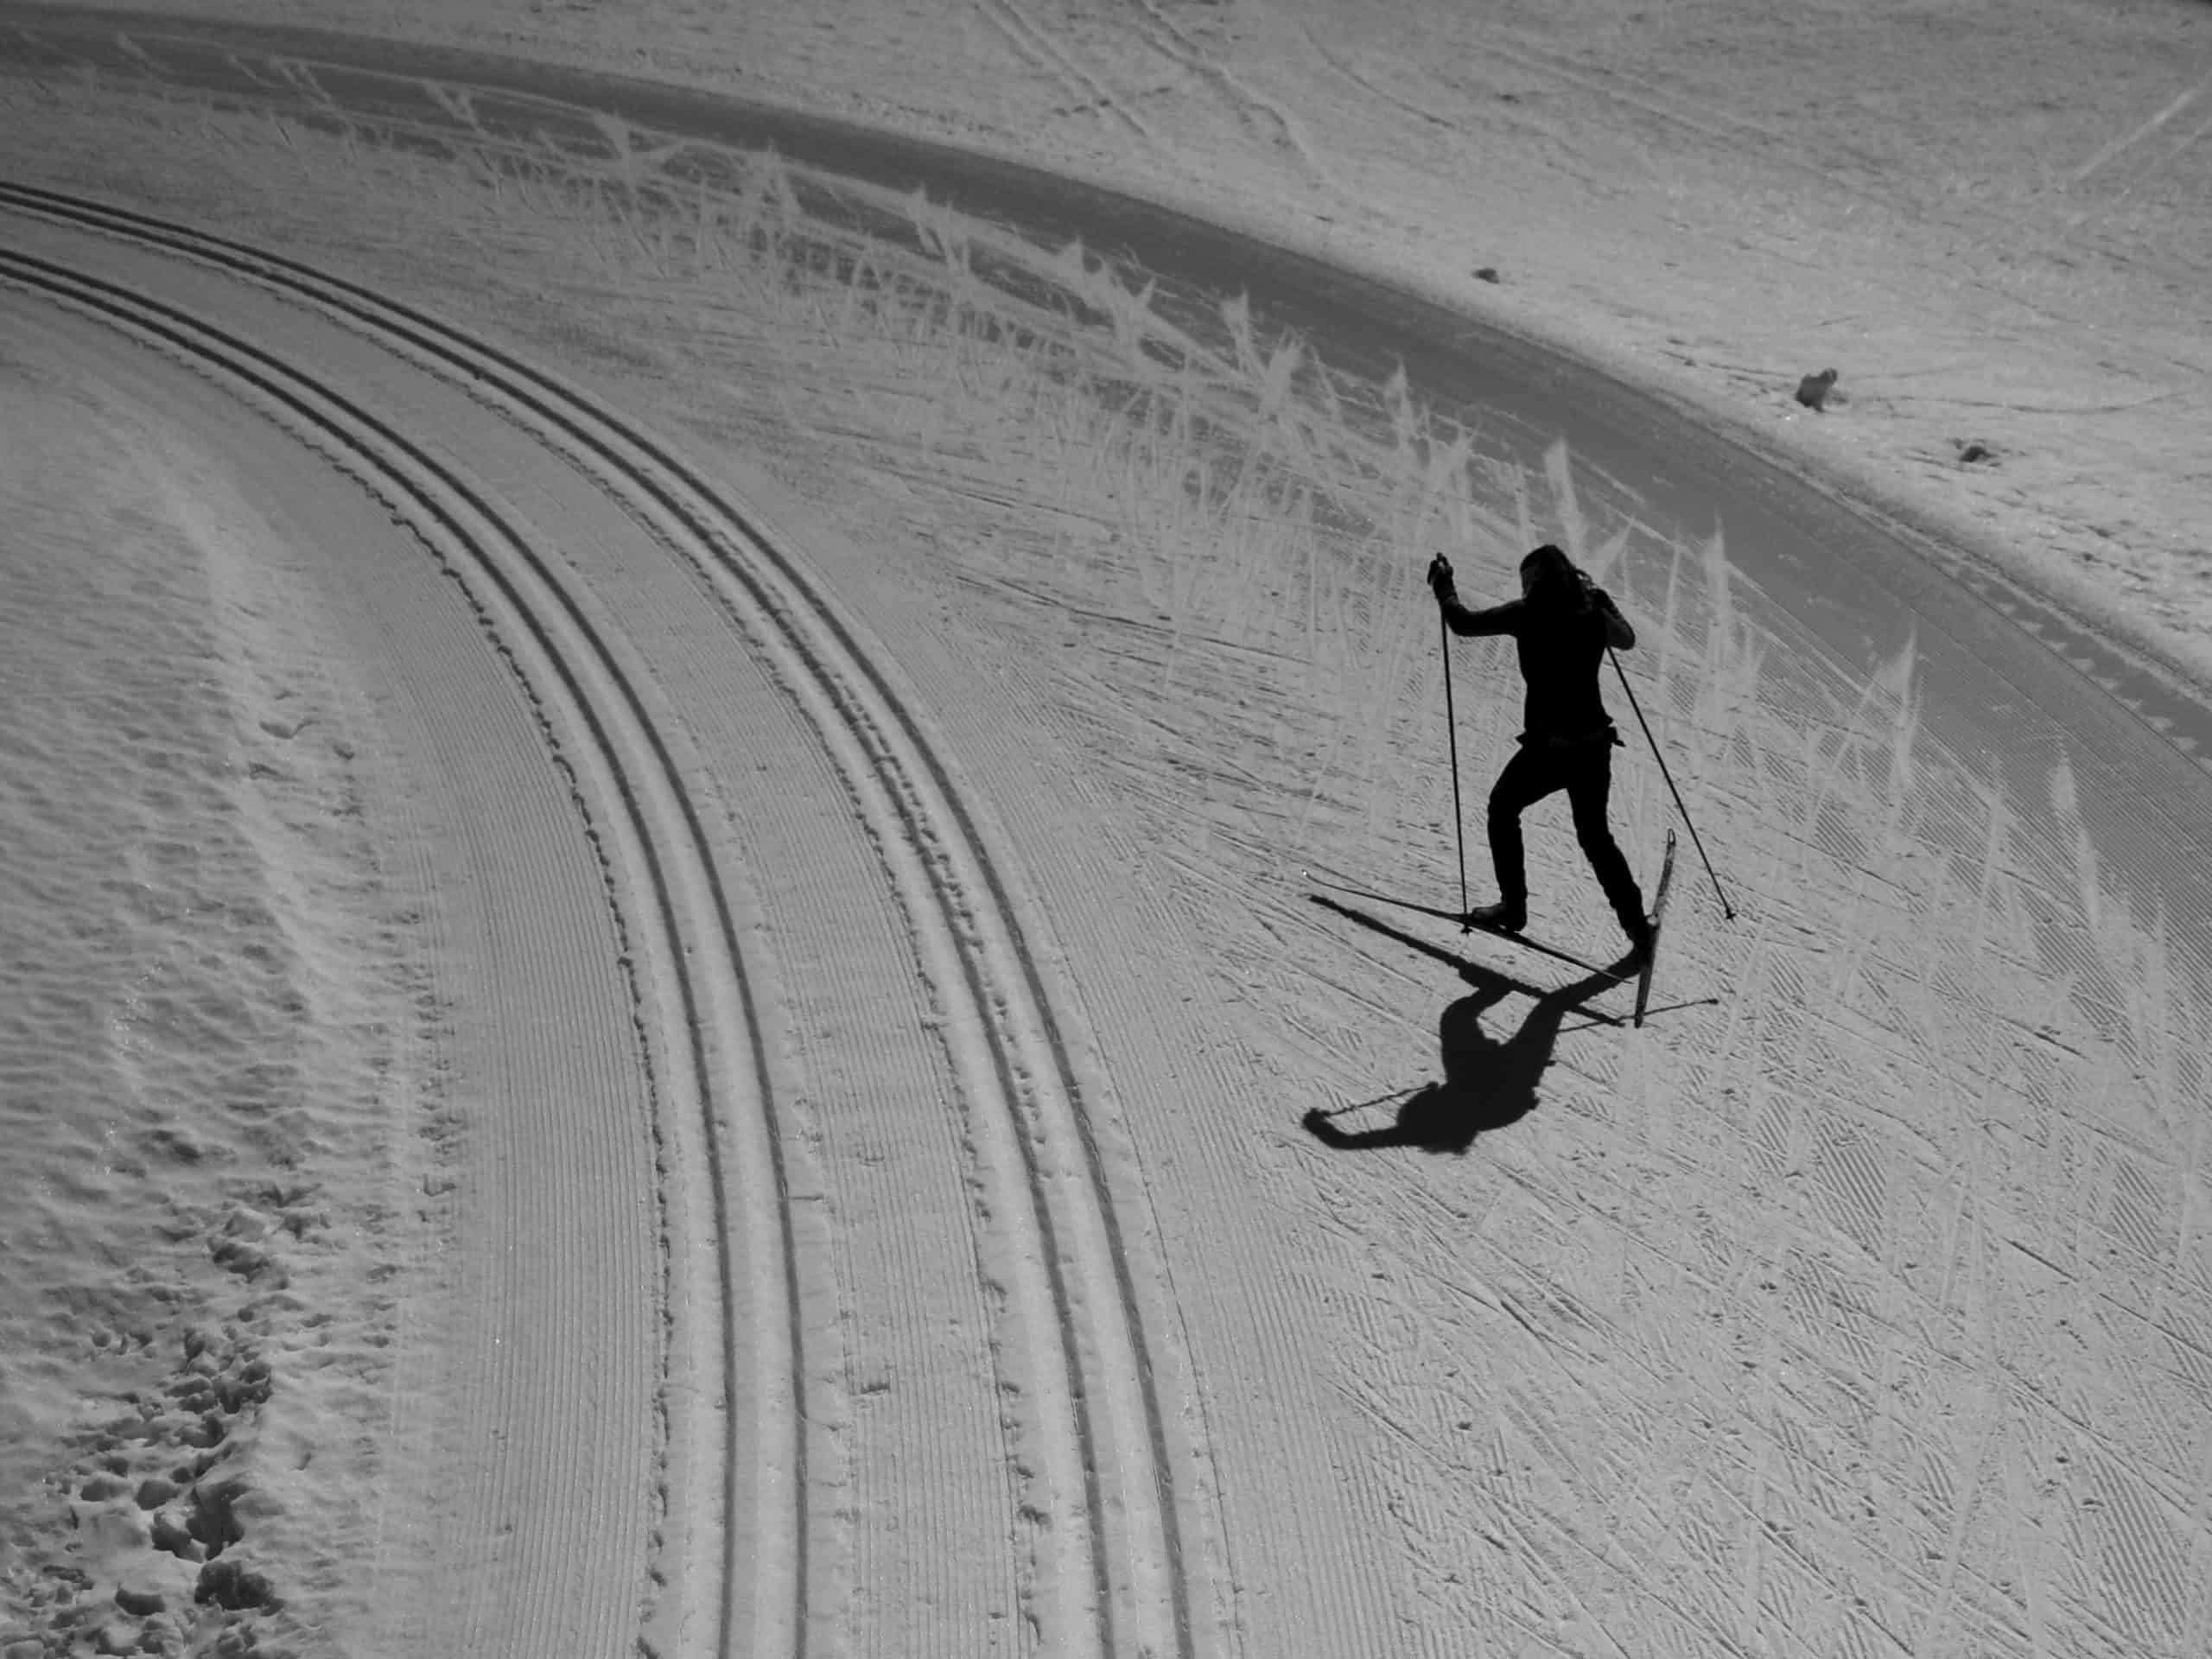 Styl klasyczny a styl łyżwowy w narciarstwie biegowym. Czym się różnią?